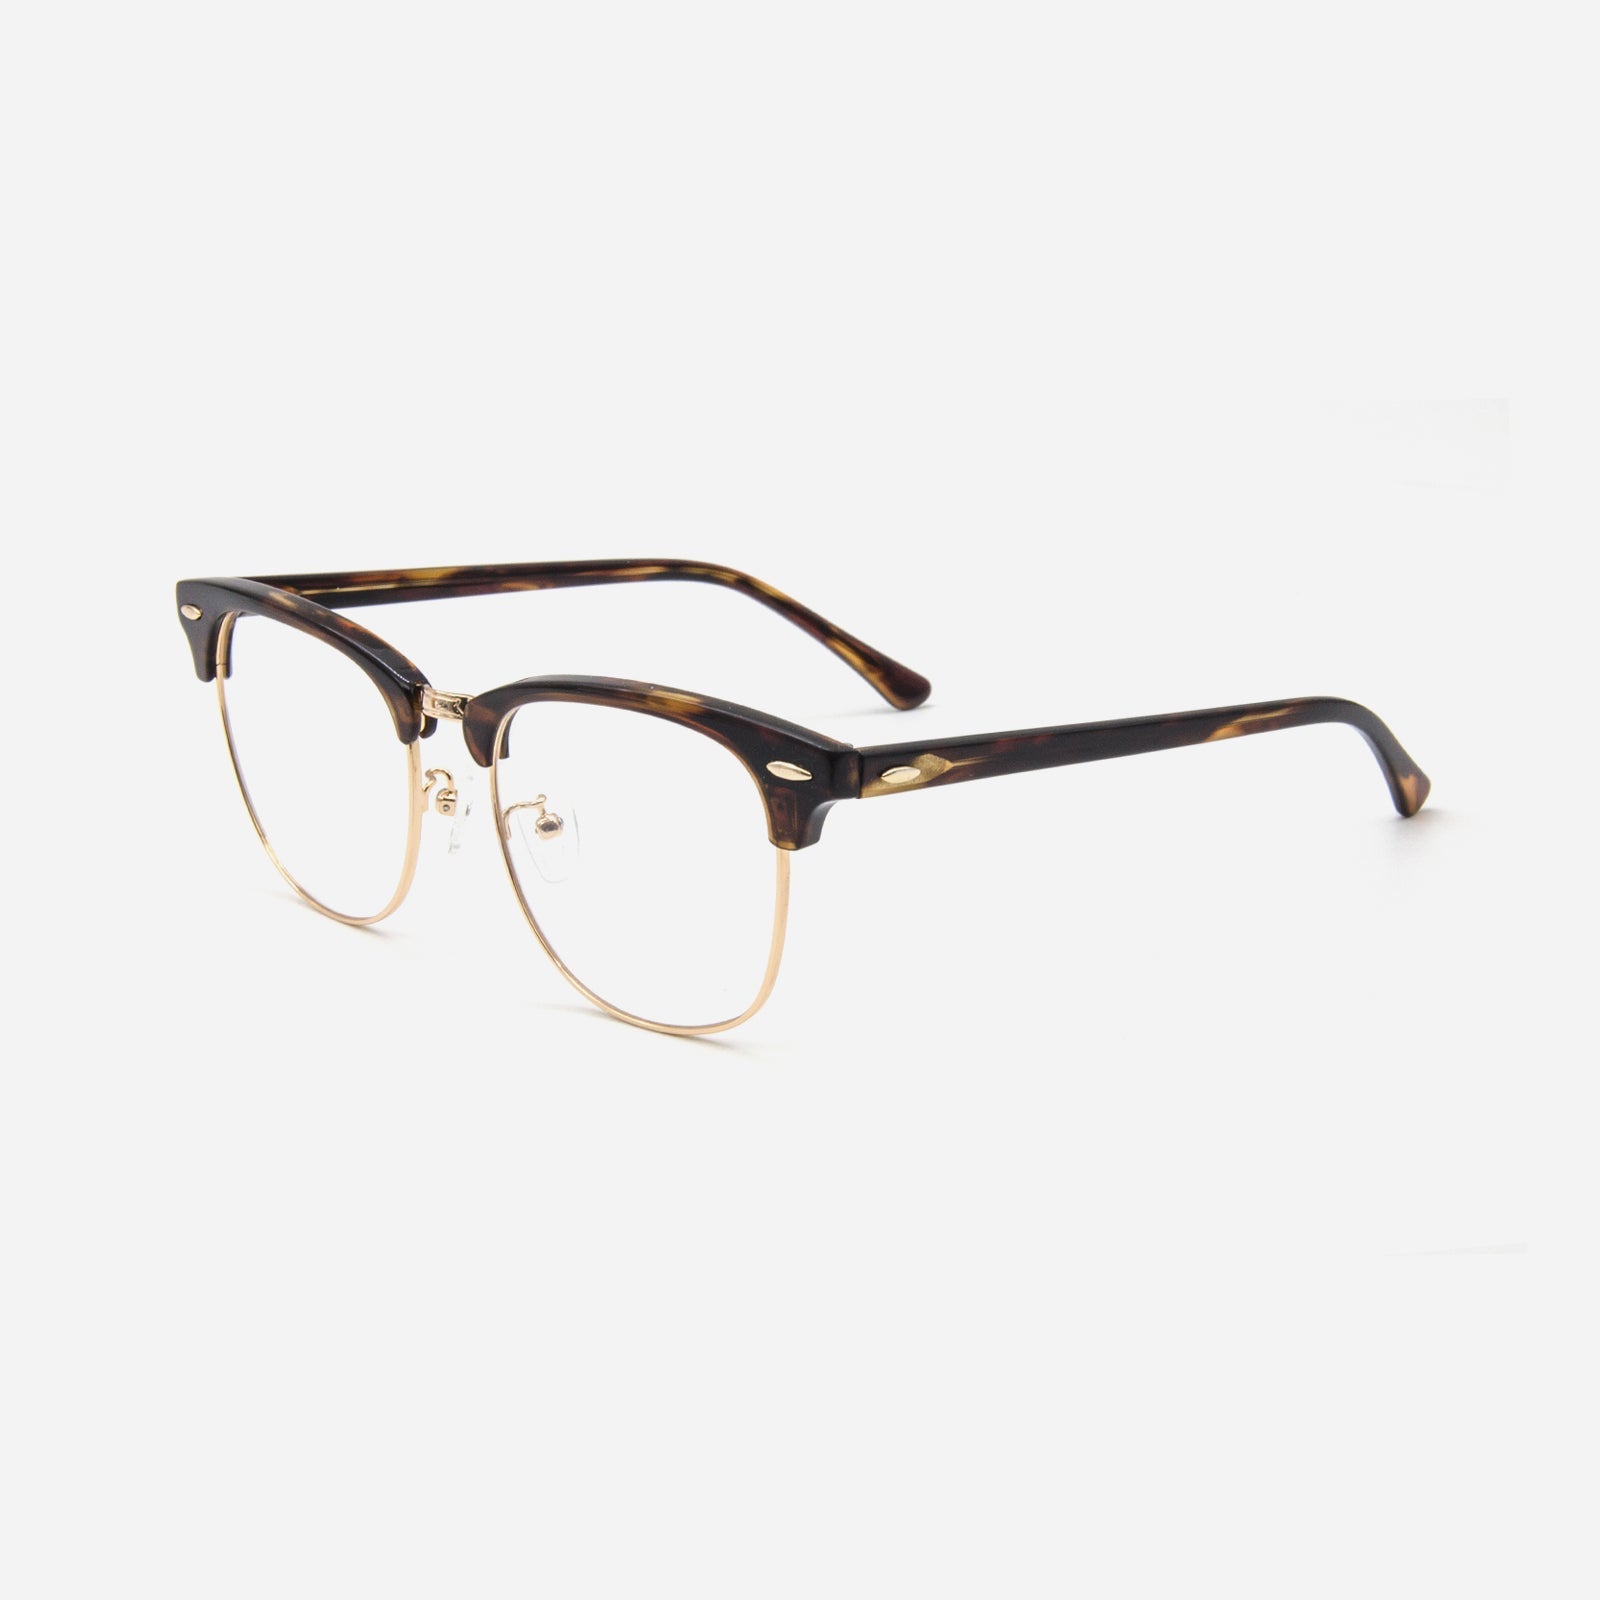 Shilon | NextPair, DTC eyeglasses designed for Asians from $78